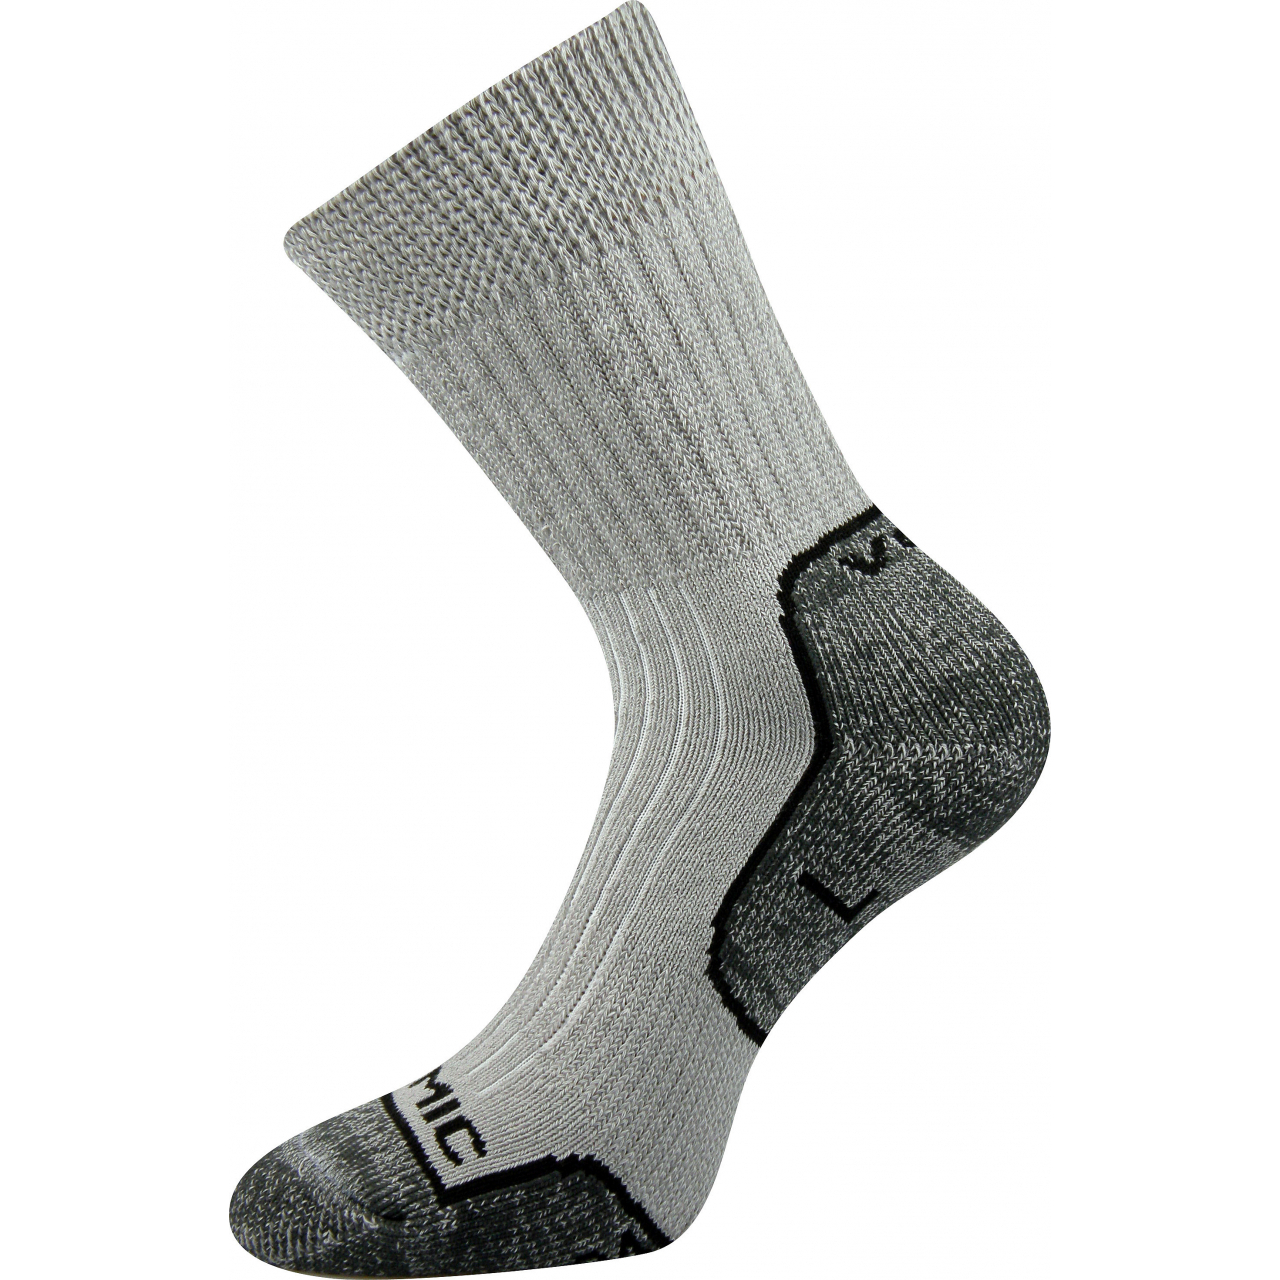 Ponožky unisex termo Voxx Zenith L + P - světle šedé-tmavě šedé, 43-45